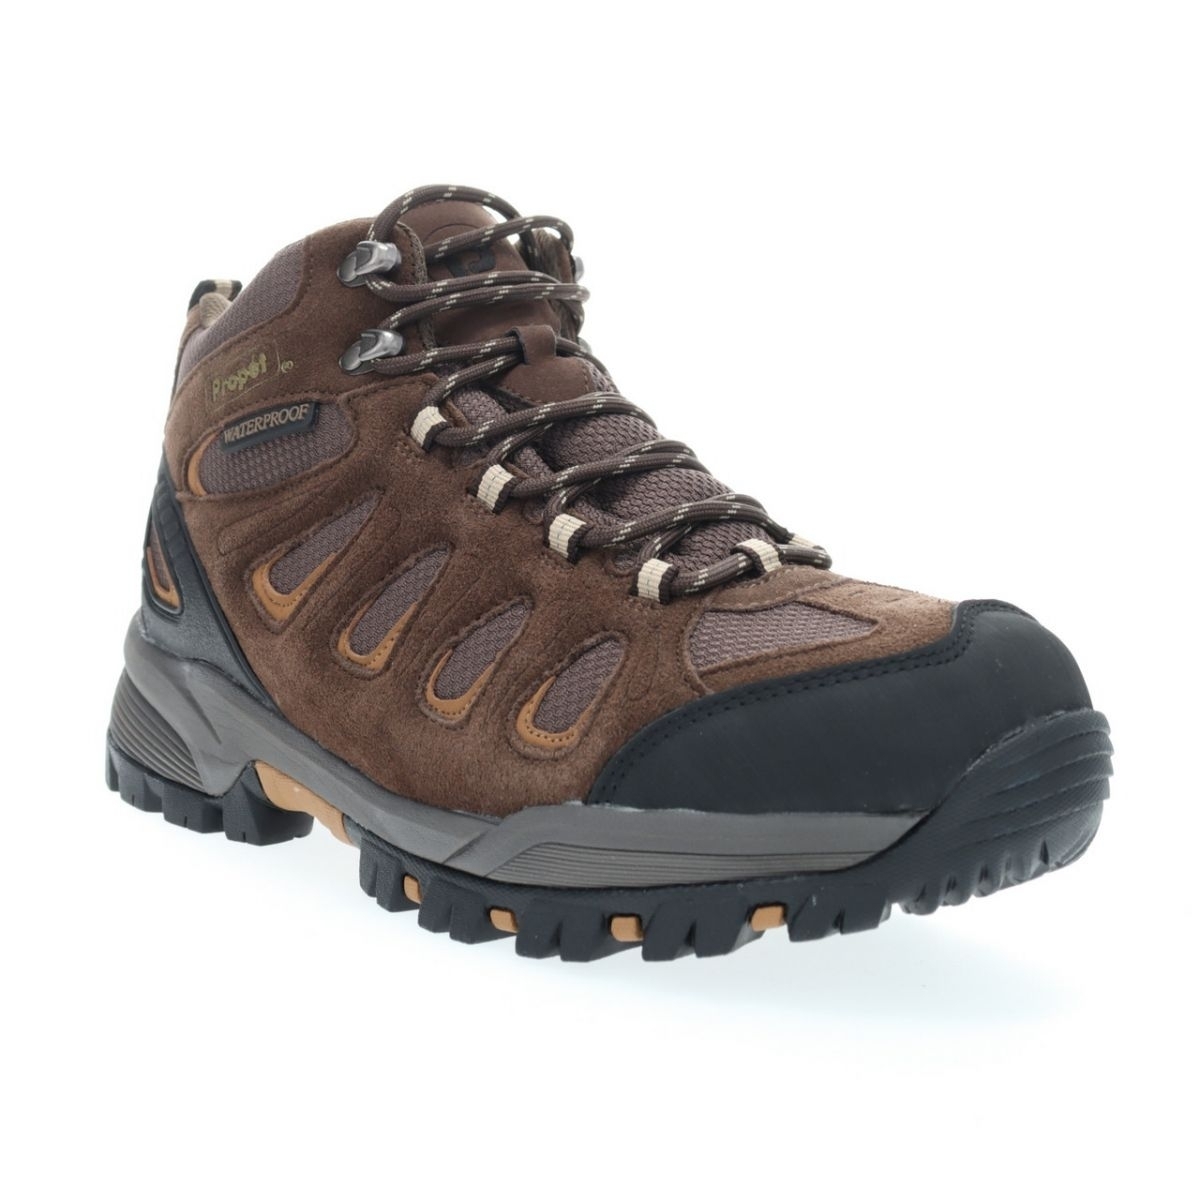 Propet Men's Ridge Walker Hiking Boot Brown - M3599BR 8 XX US Men BROWN - BROWN, 12 Wide